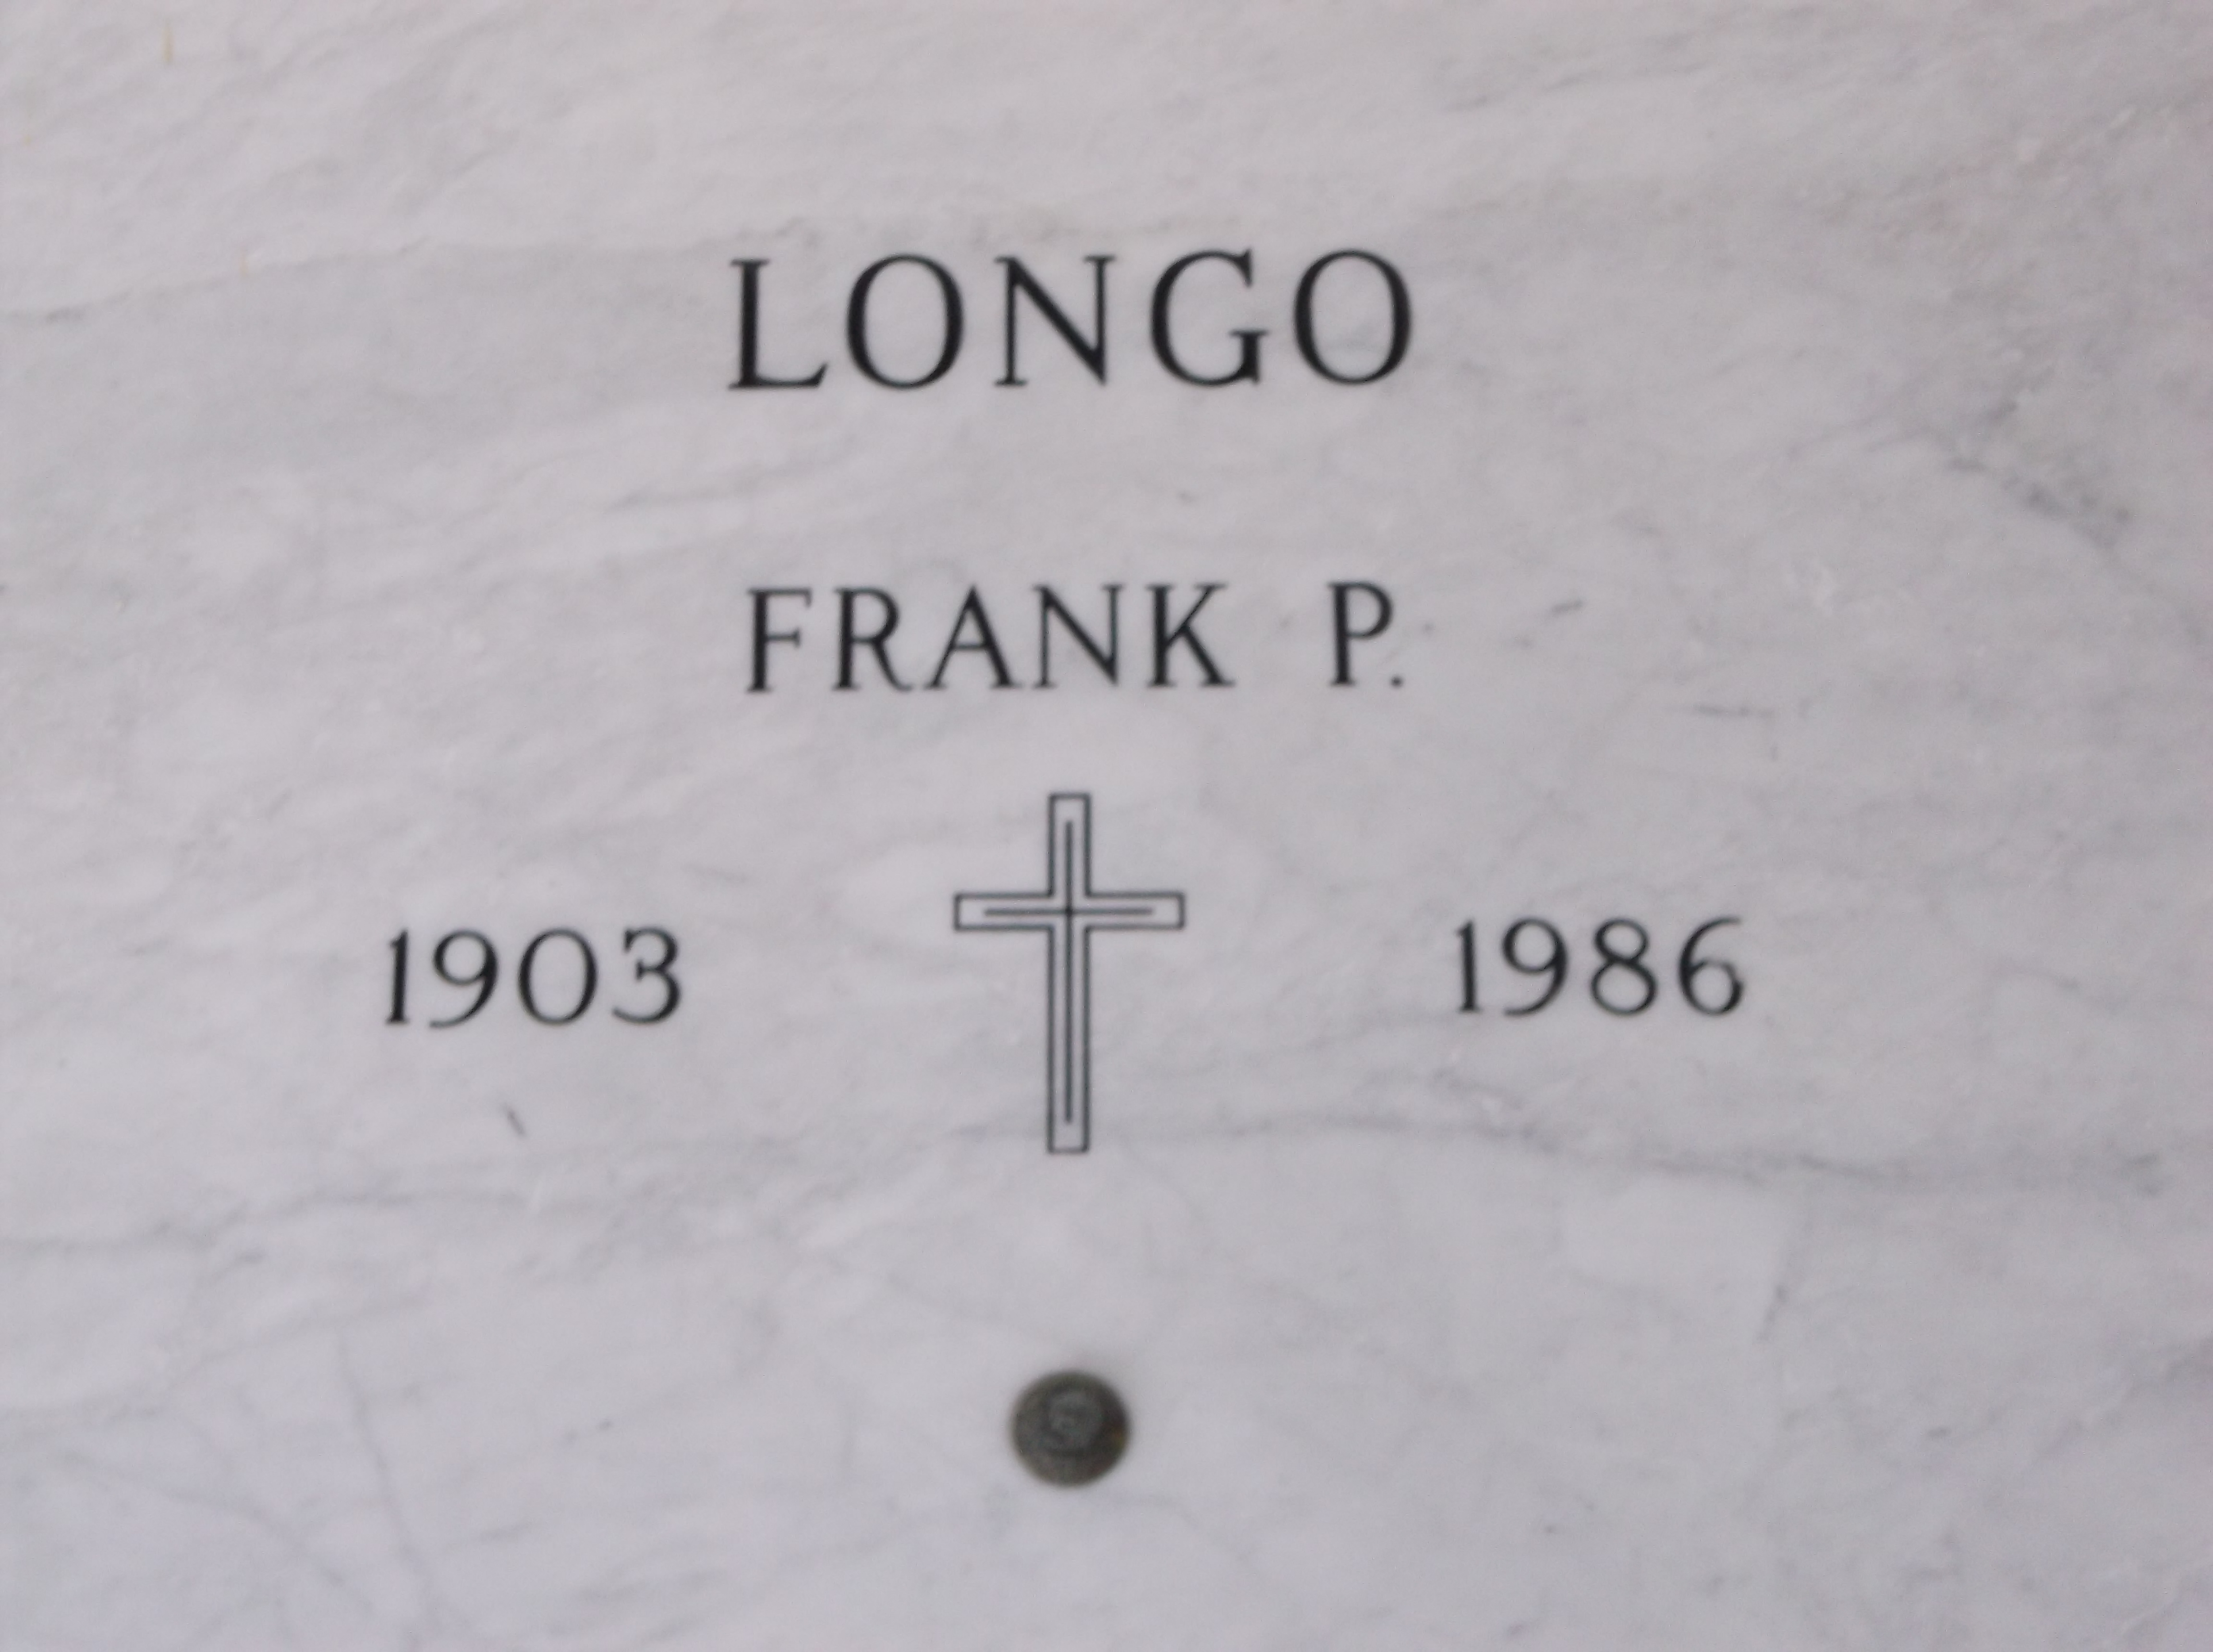 Frank P Longo